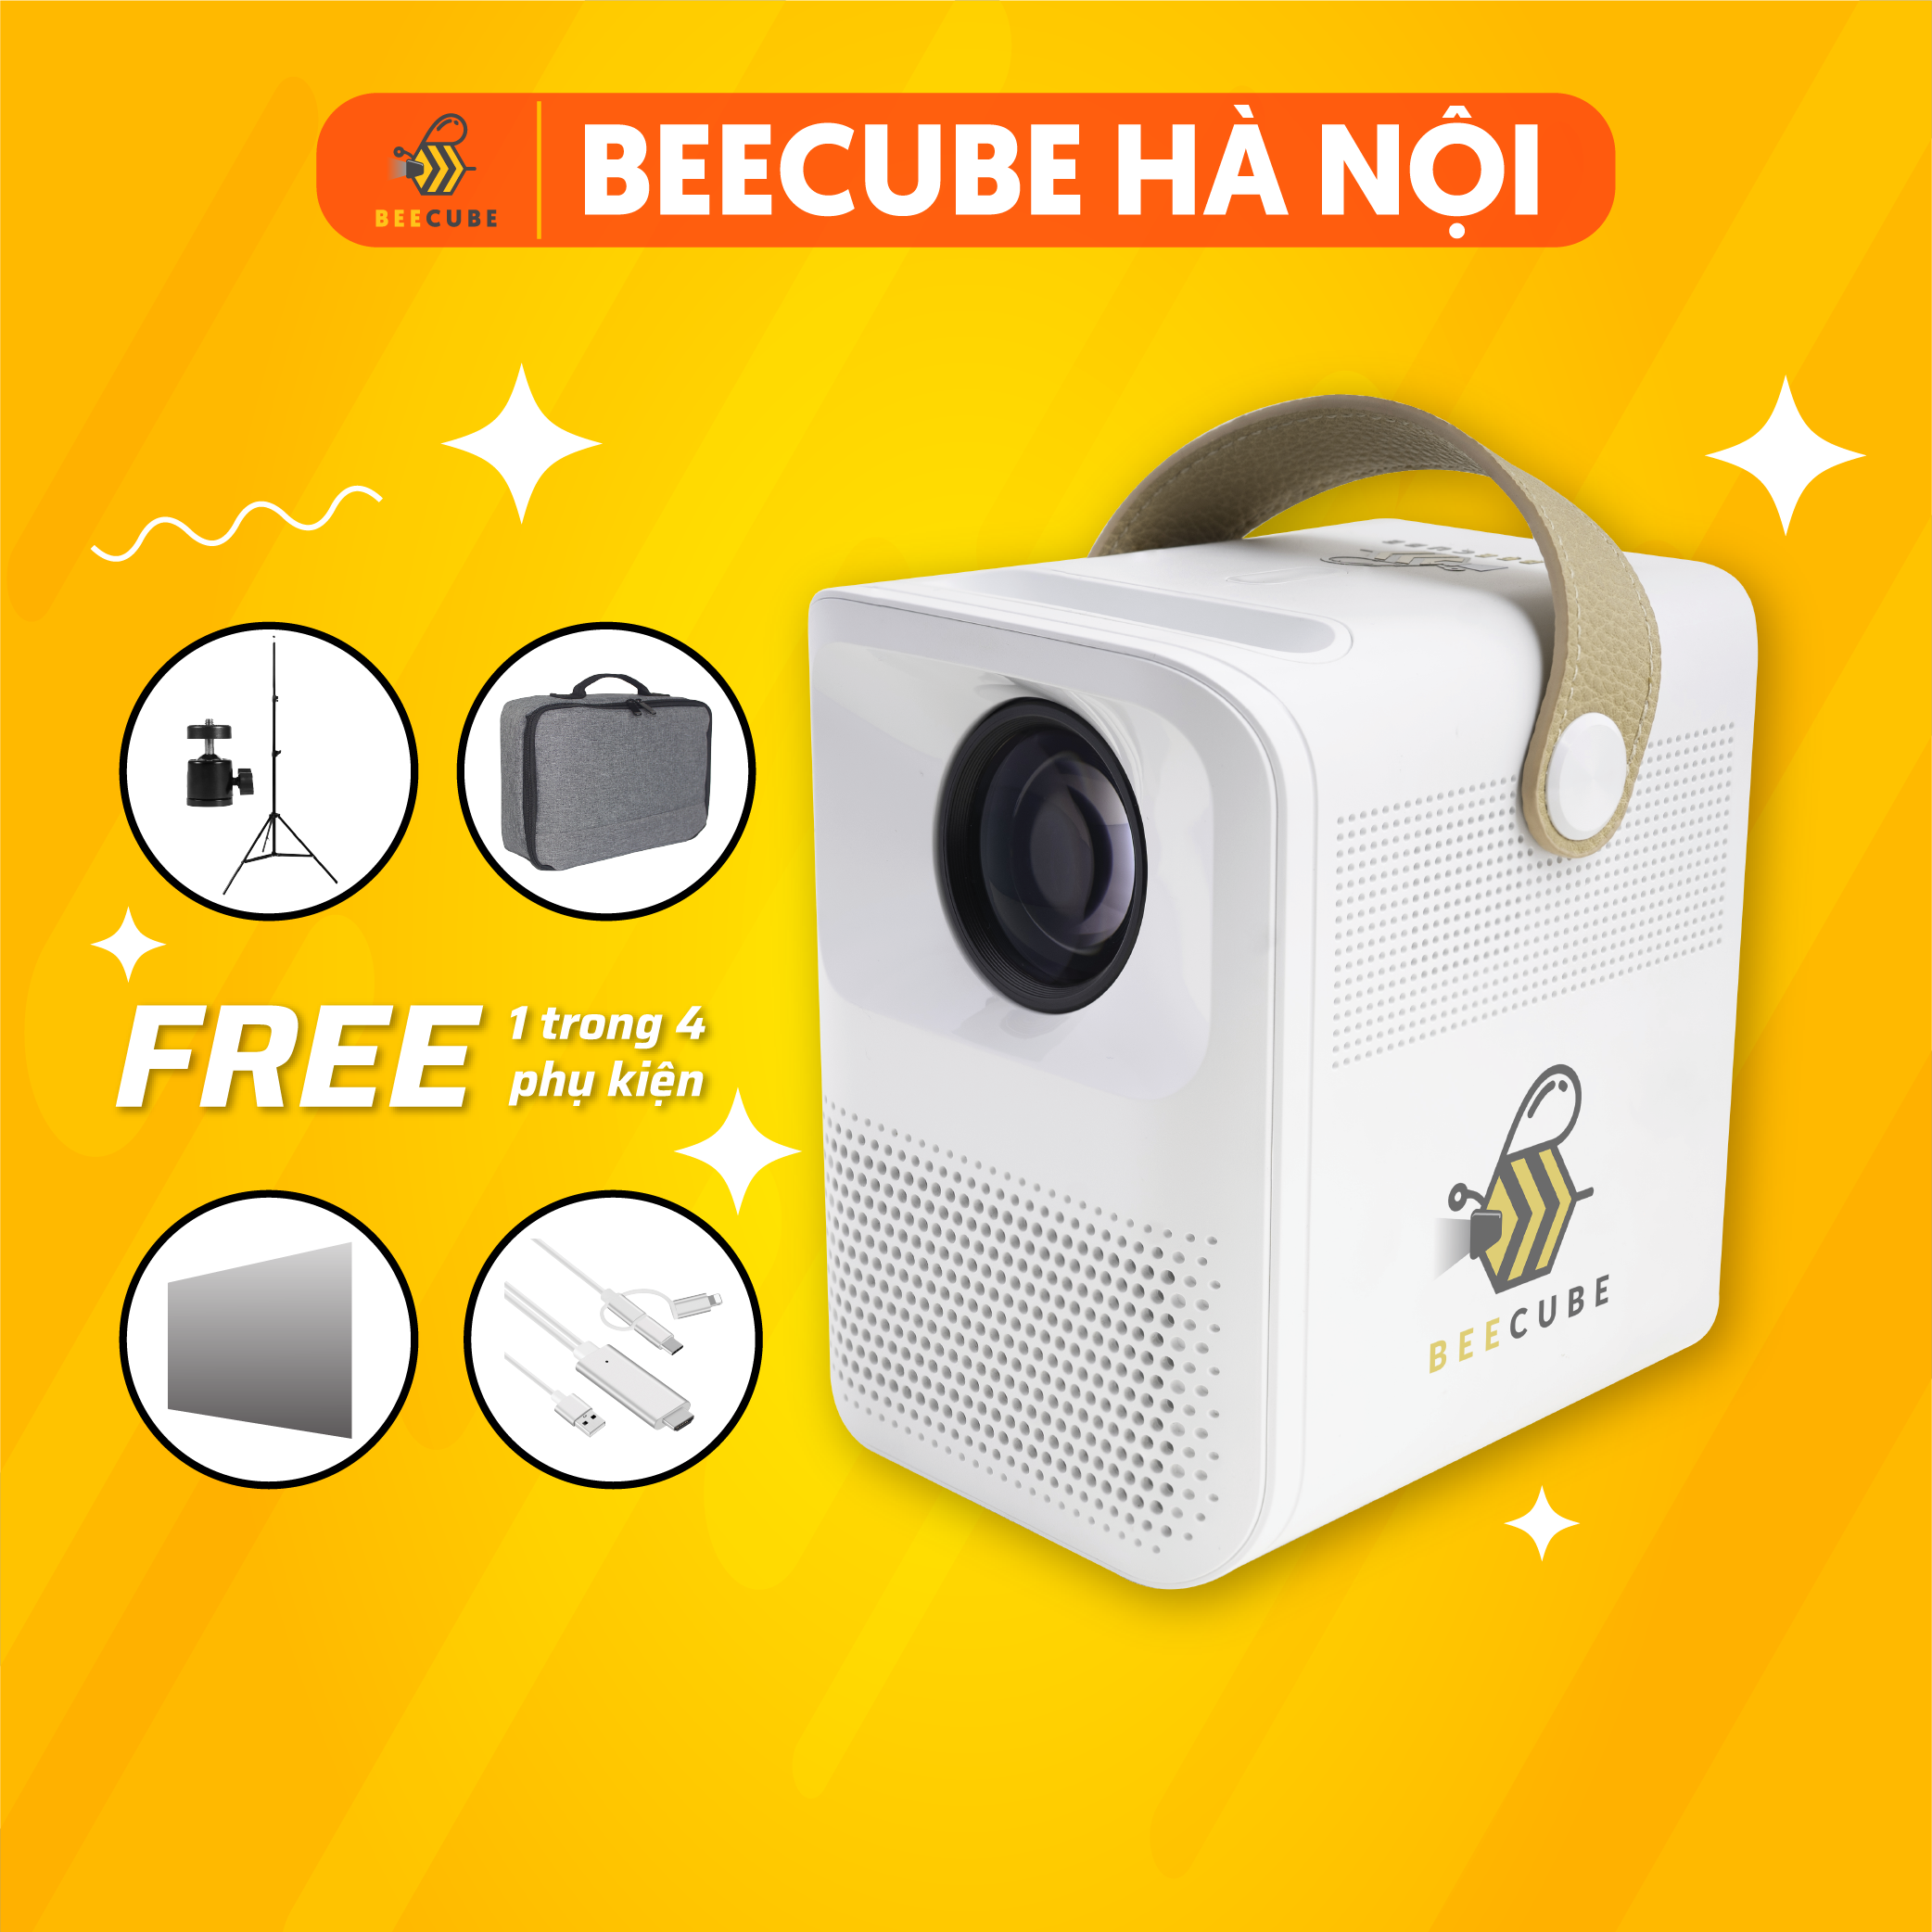 Máy Chiếu Phim Mini Beecube X2 Max Full HD 1080p  Hệ Điều Hành Android TV  Kết Nối Wifi  Bảo Hành 12 Tháng